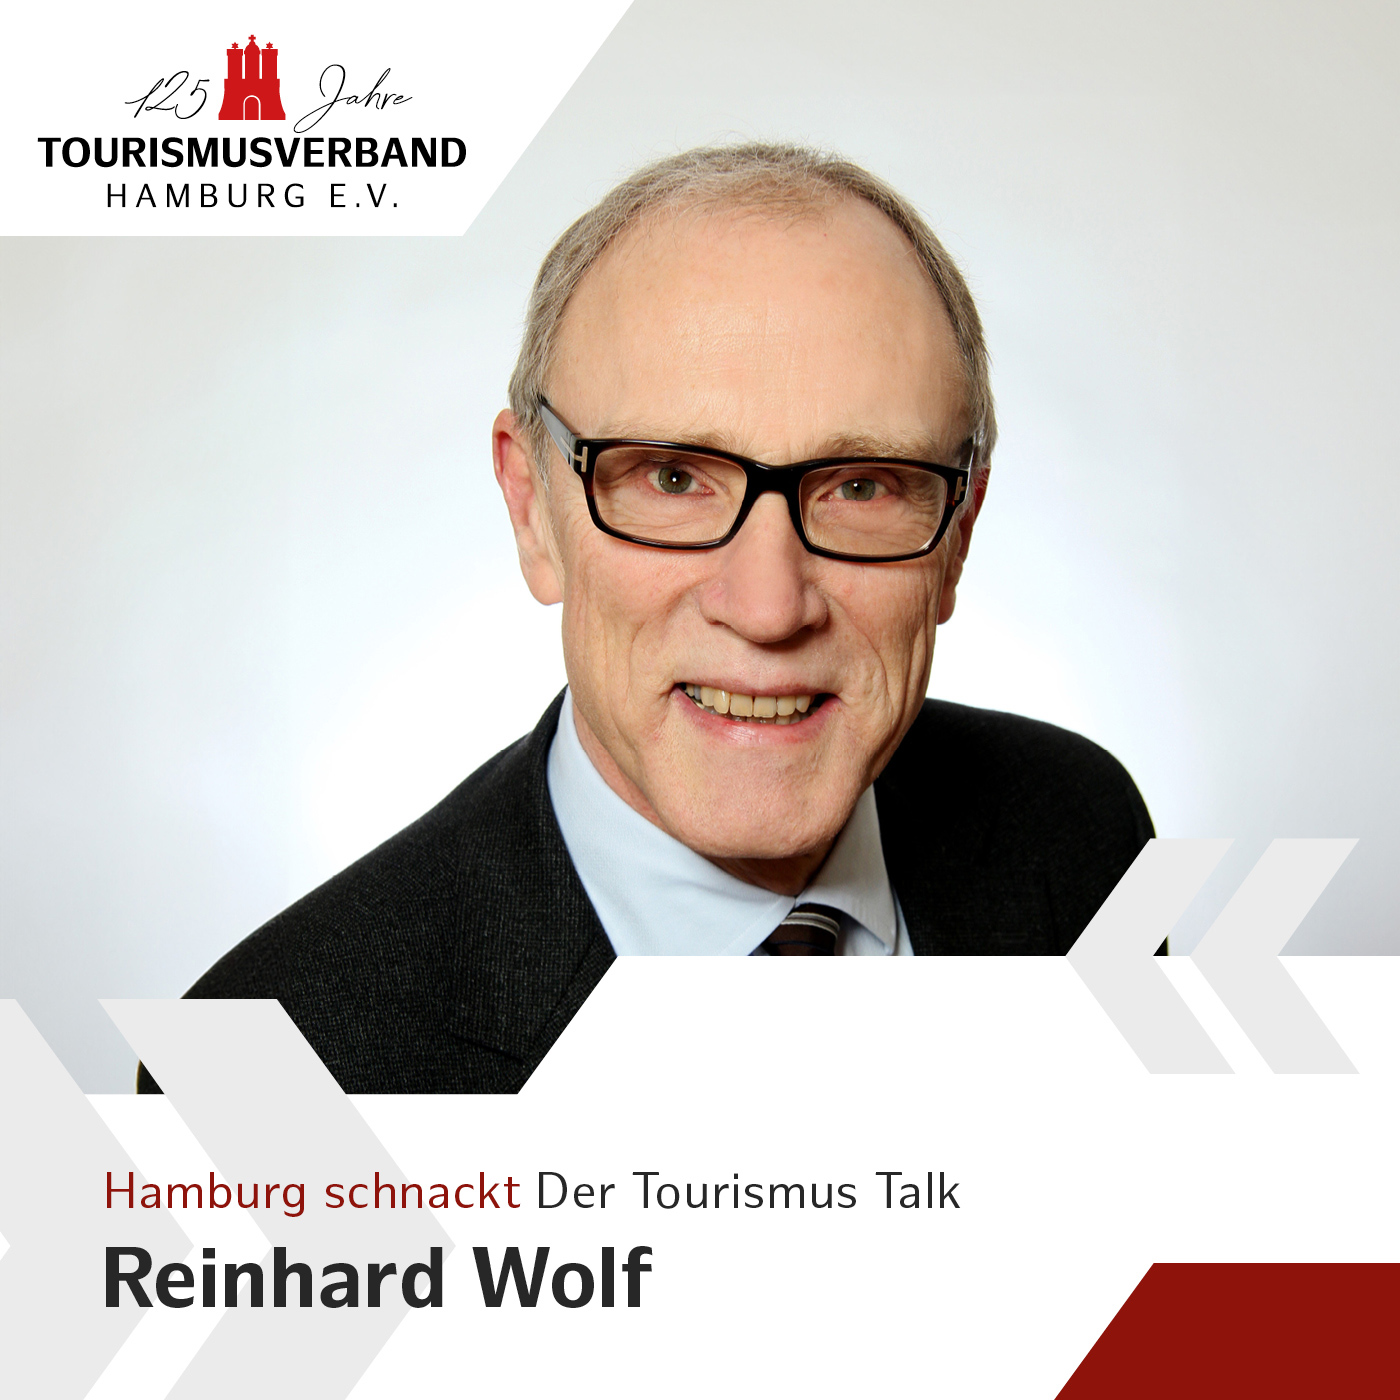 Hamburg schnackt mit Reinhard Wolf